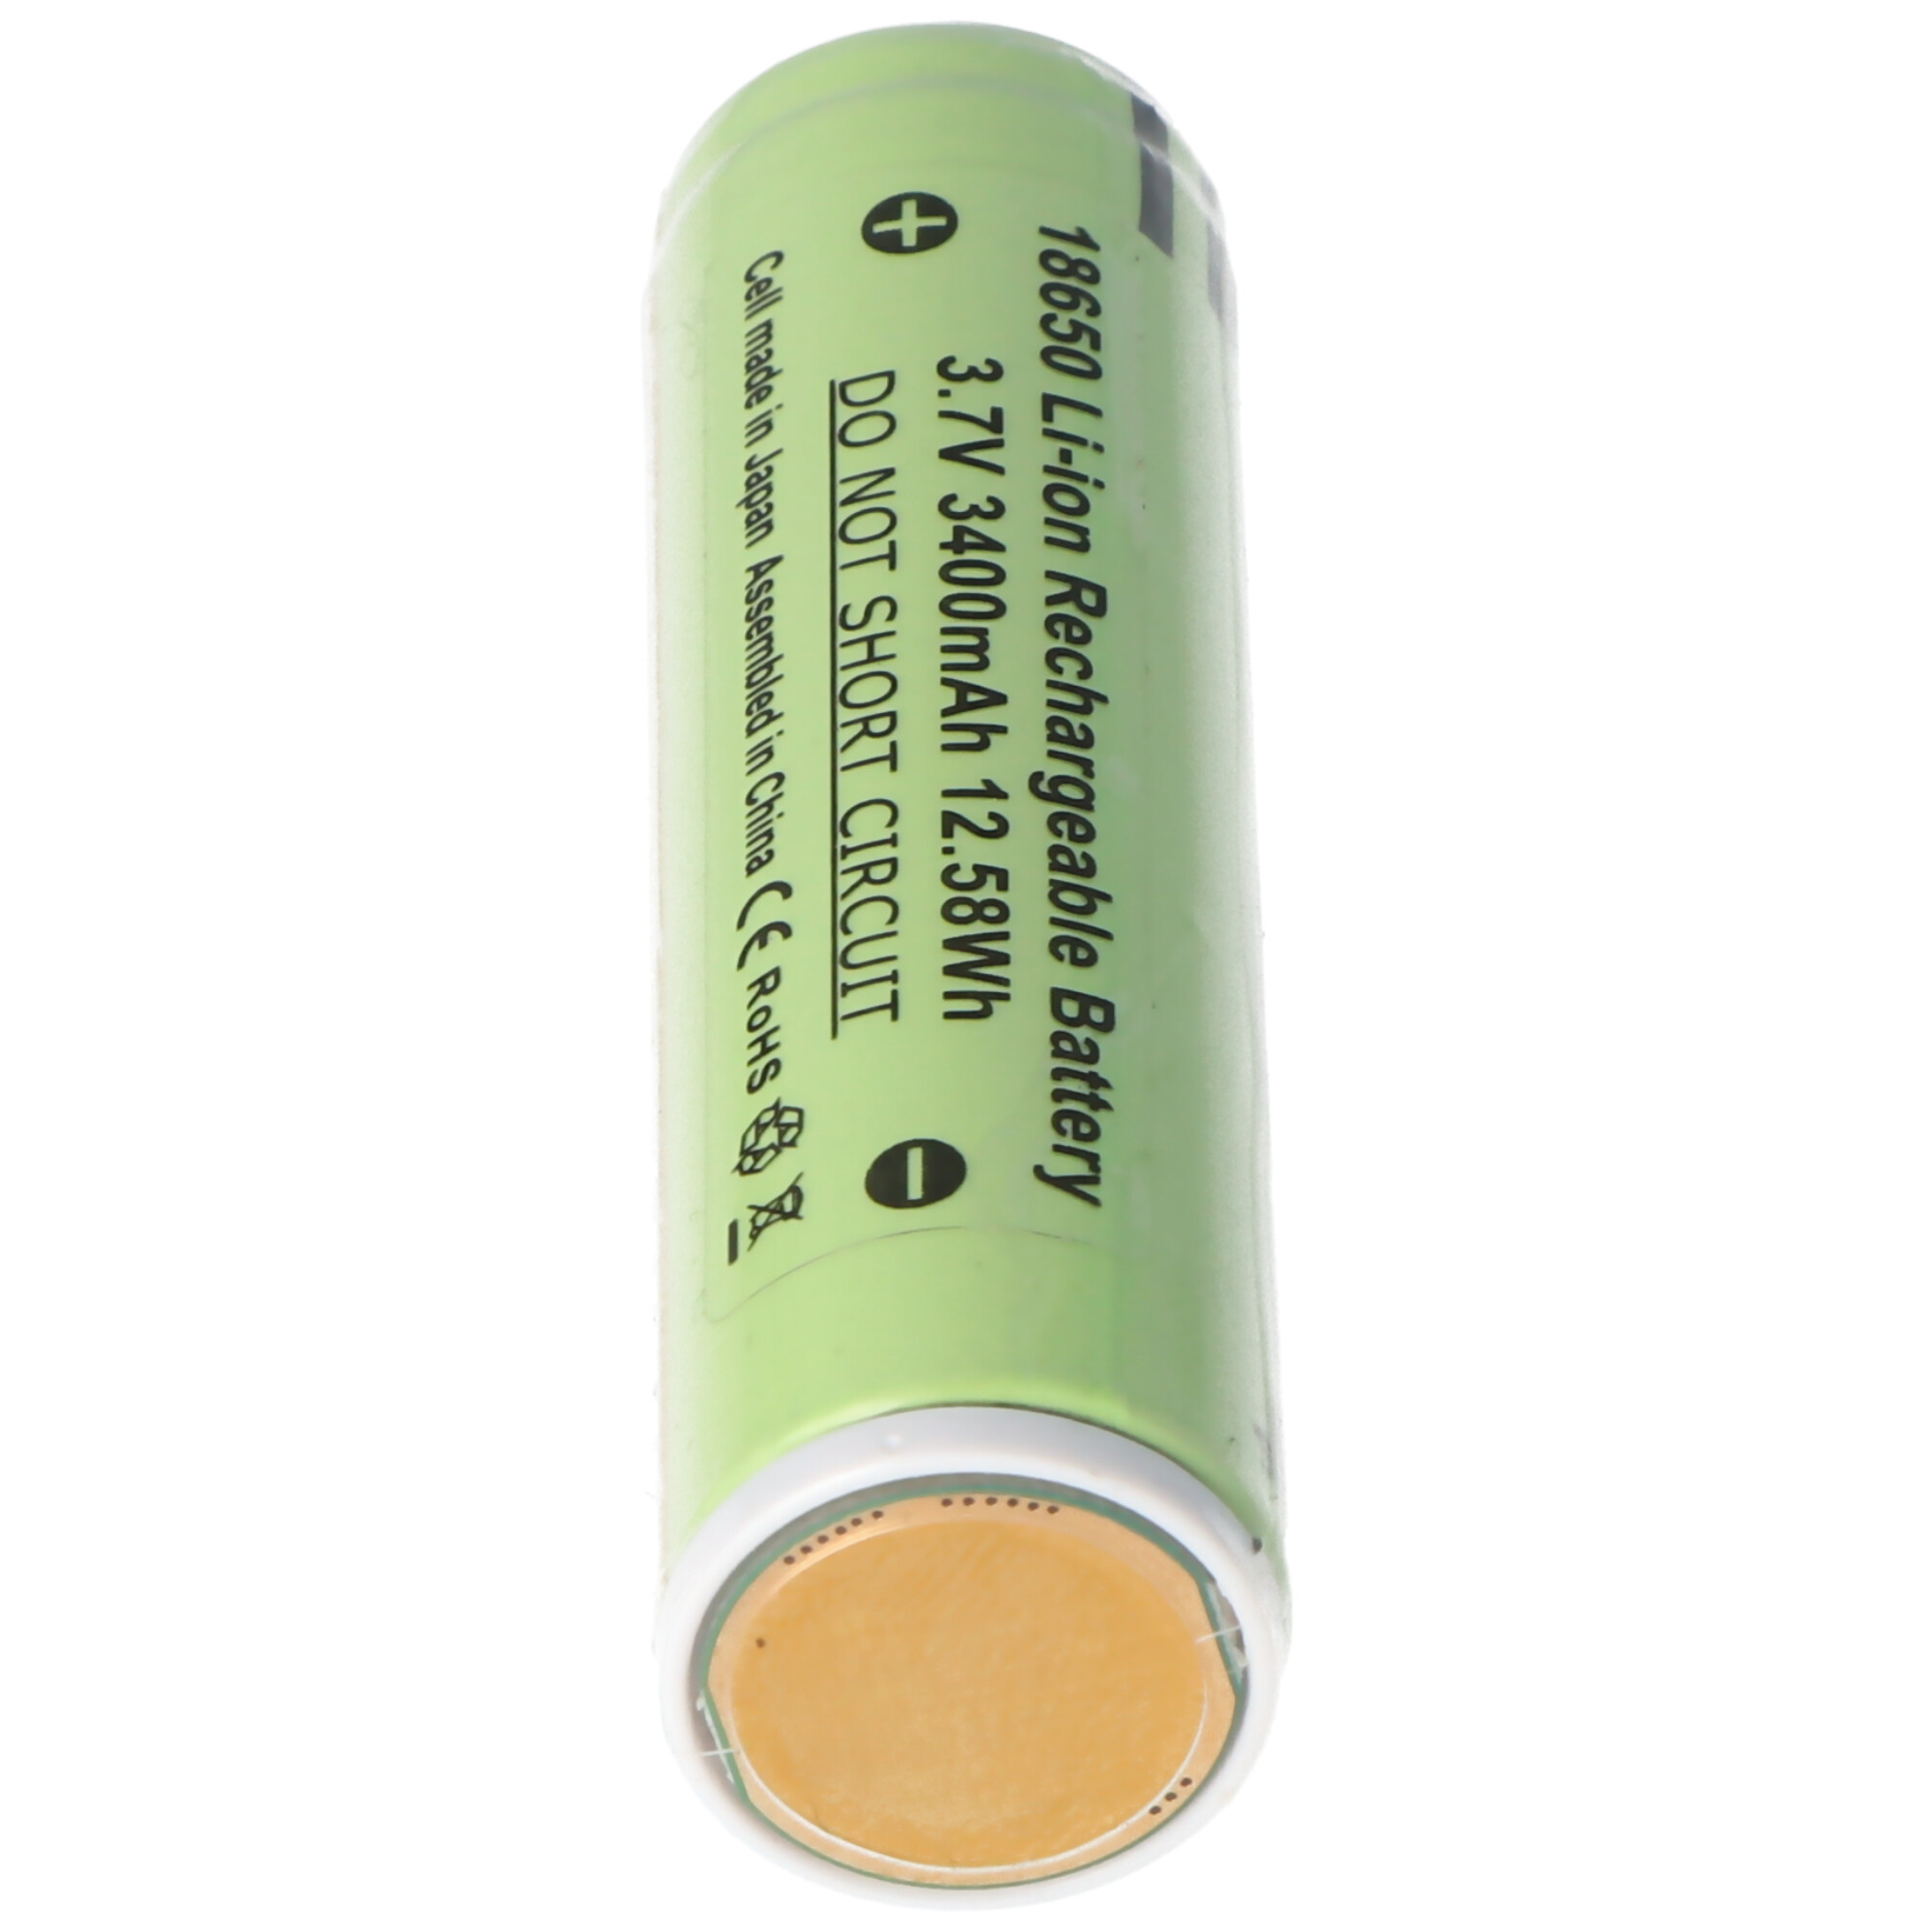 LEDLENSER Batterie li-ion pour f1r, h8r, ih8r, m7r, mh10, mt10, p7r